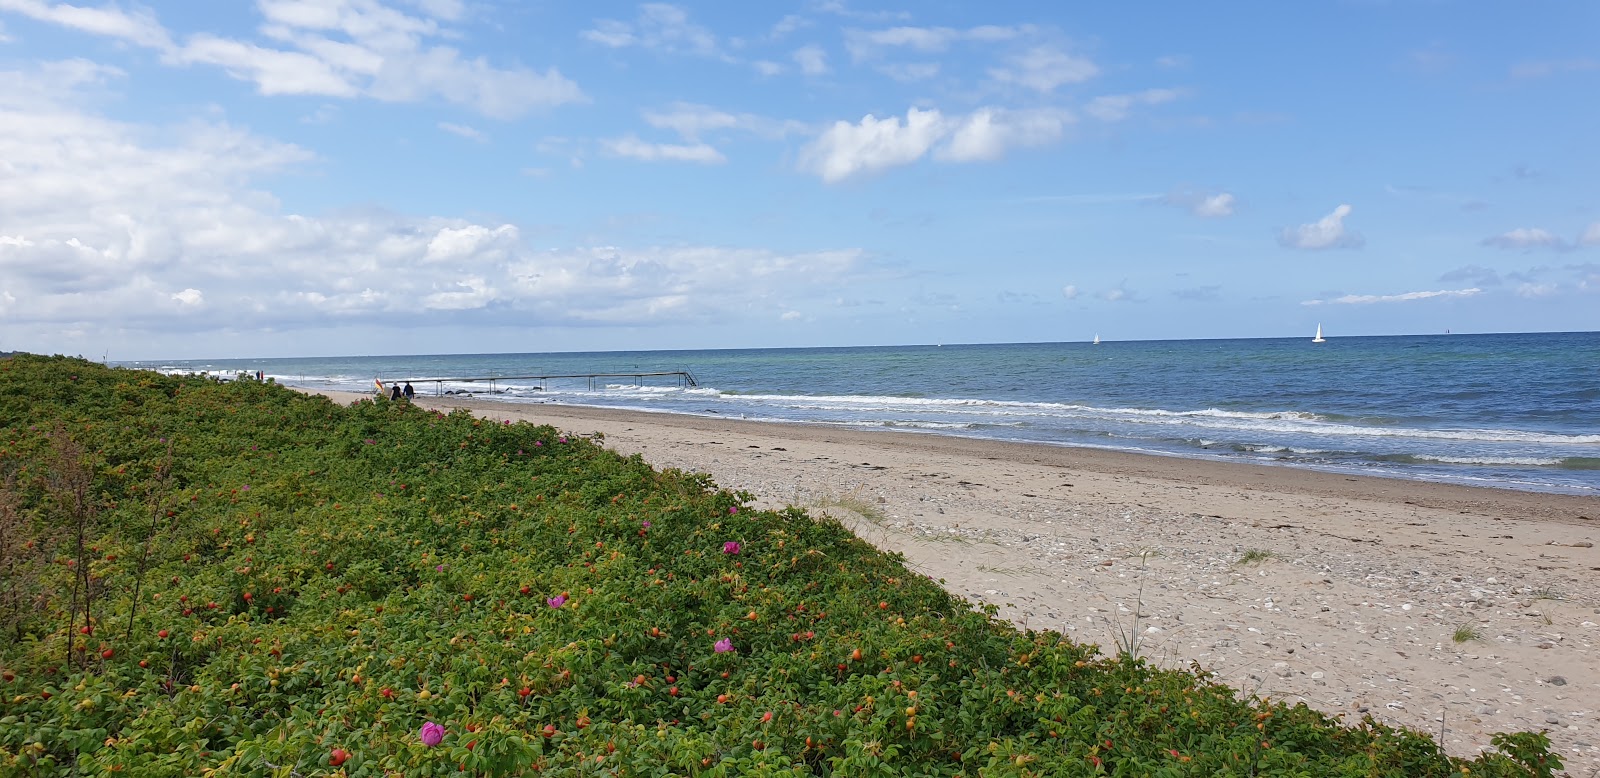 Smidstrup Beach'in fotoğrafı geniş plaj ile birlikte